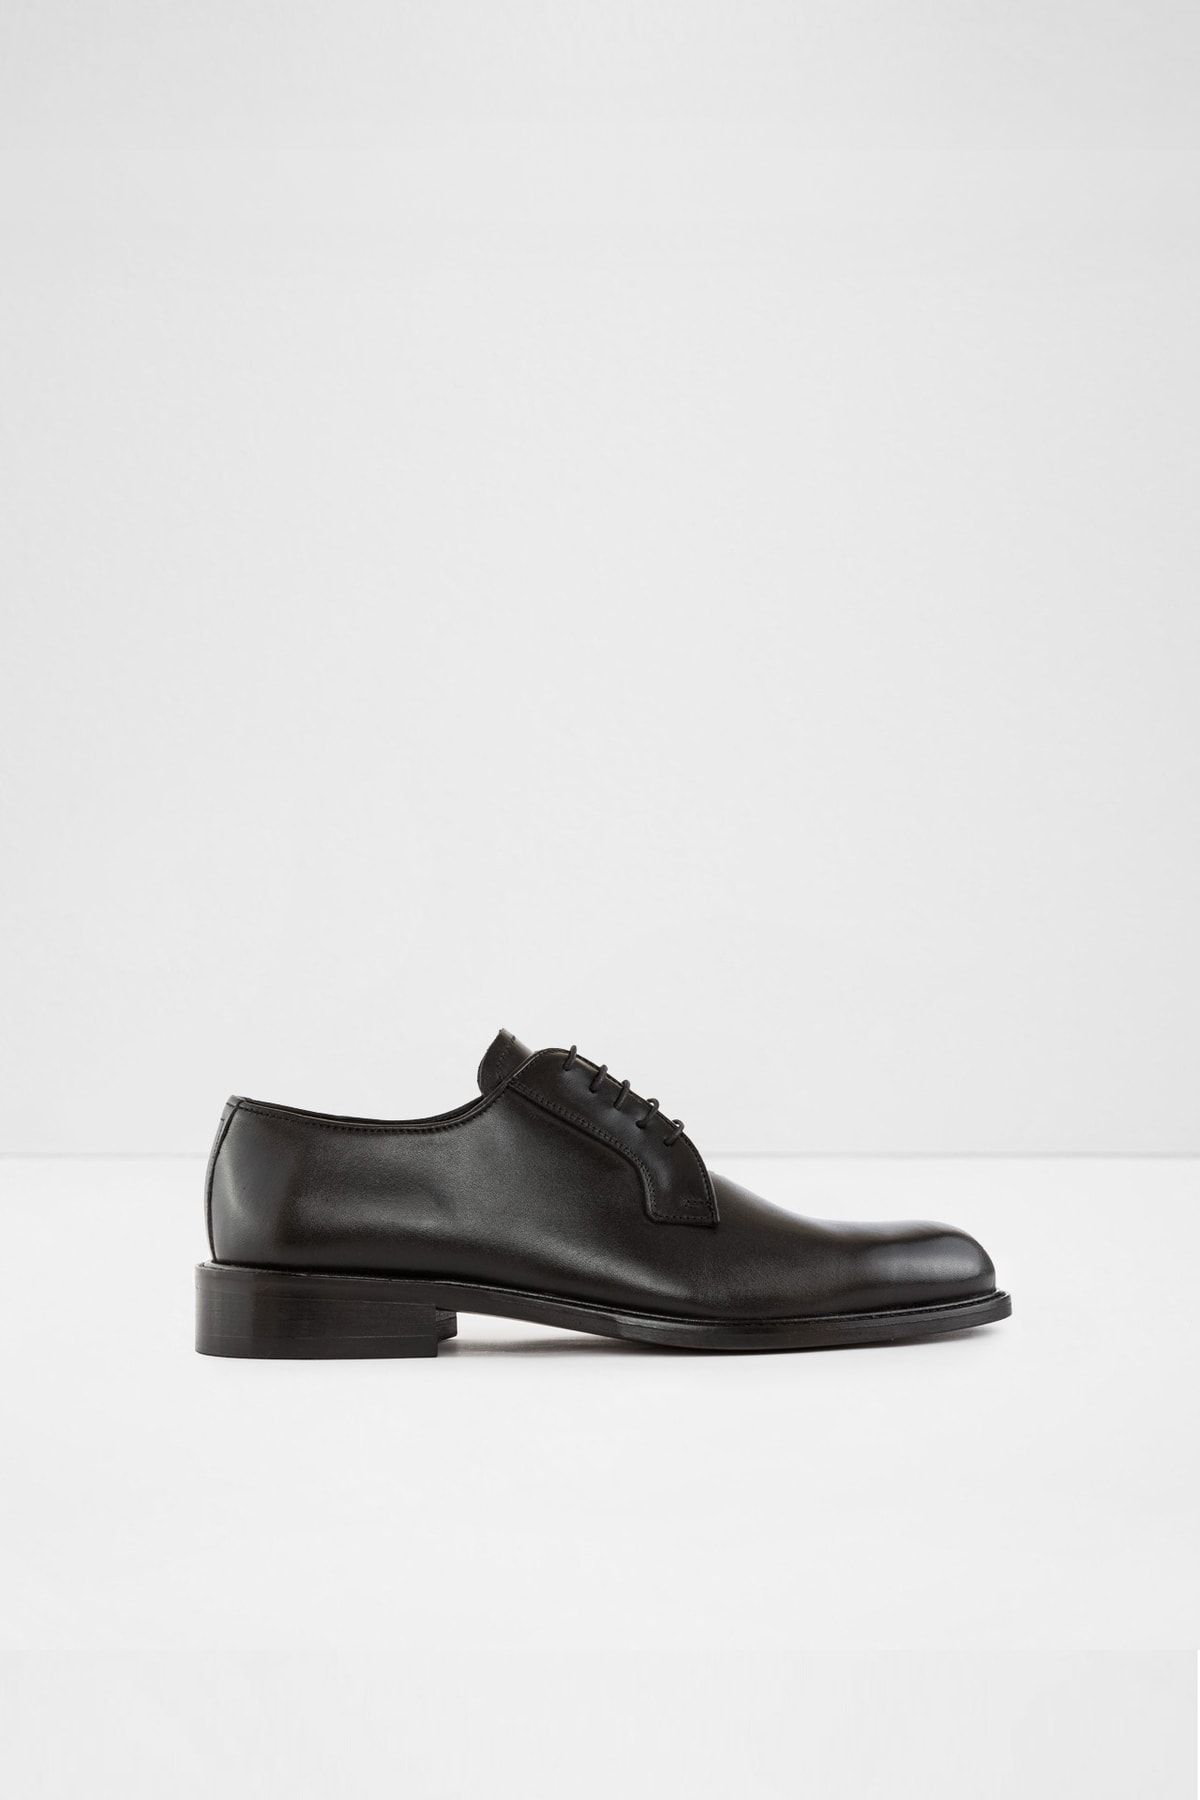 Aldo Deri Siyah Erkek Oxford & Loafer Ayakkabı